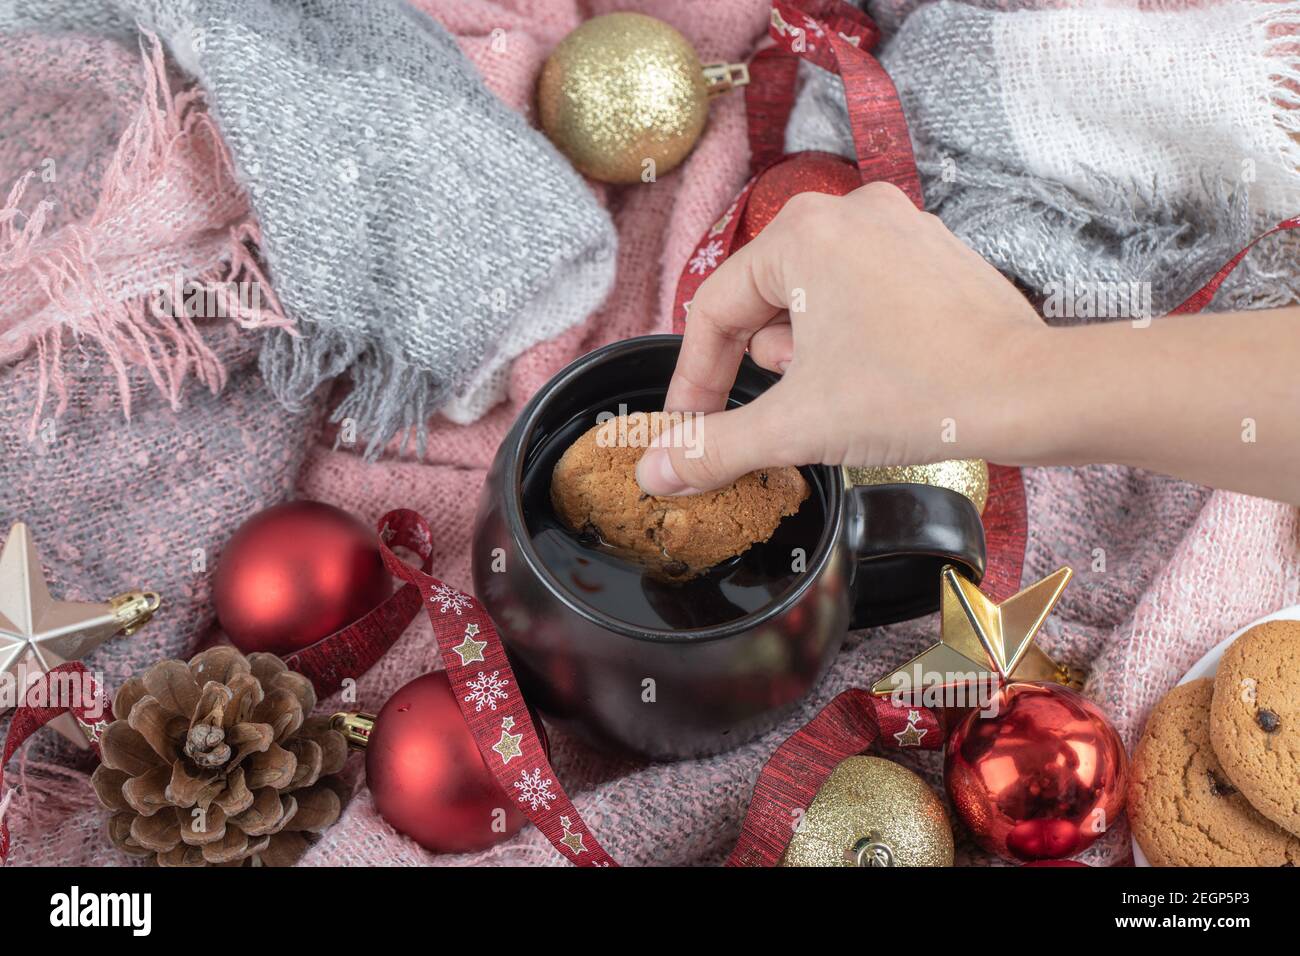 Sumergir la galleta de jengibre en la bebida en la mesa cubierta con adornos de navidad Foto de stock